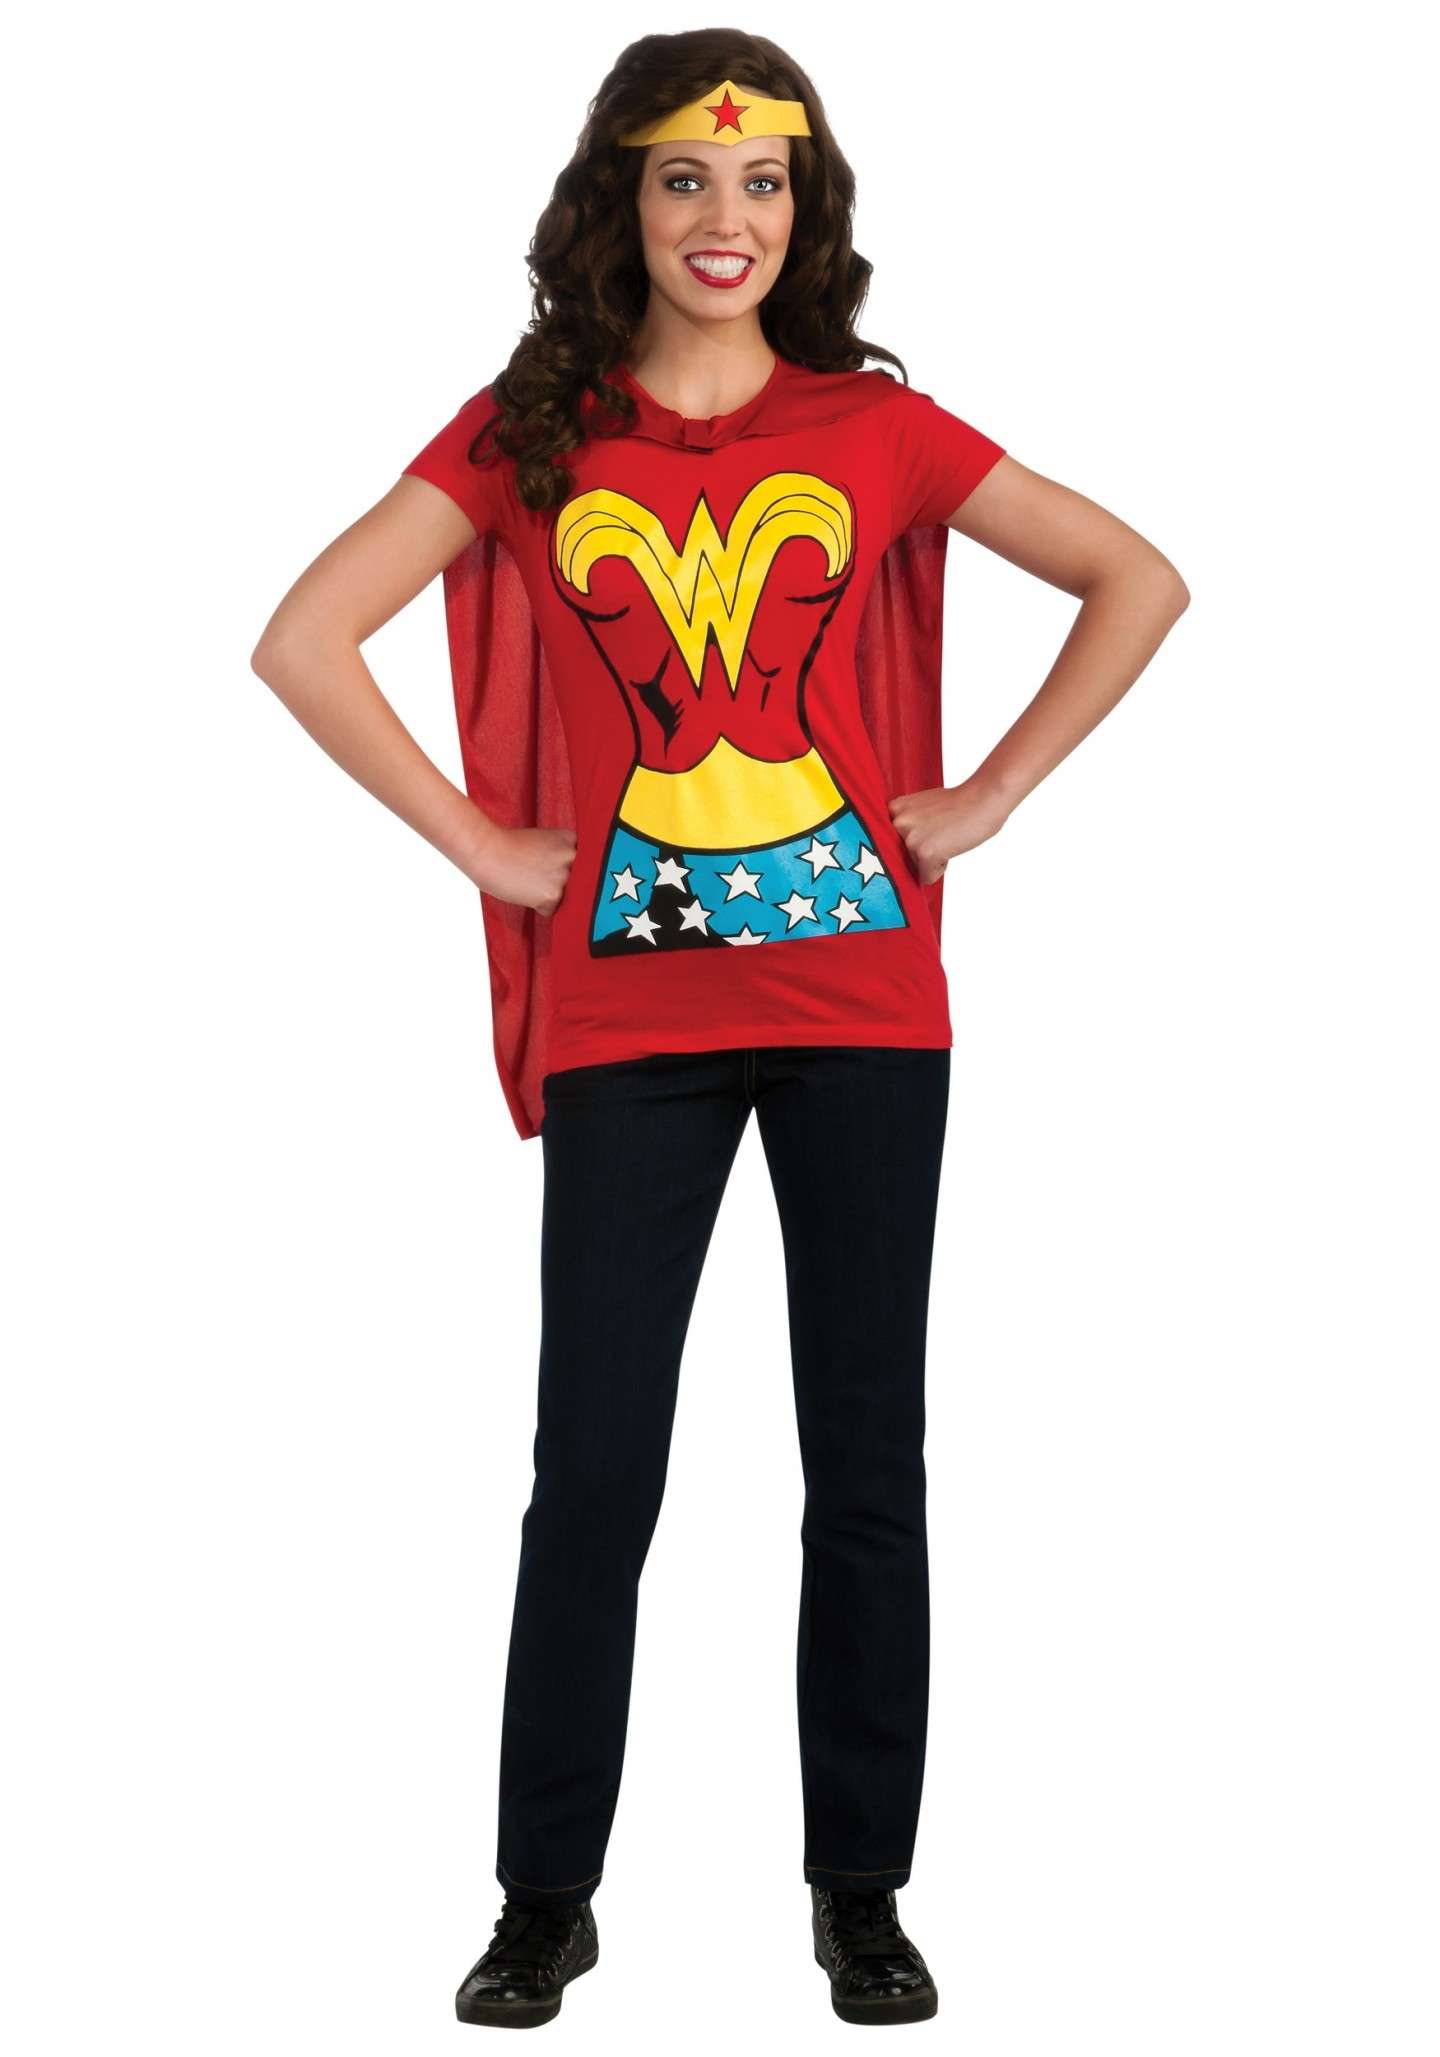 Realizzare il costume di Wonder Woman